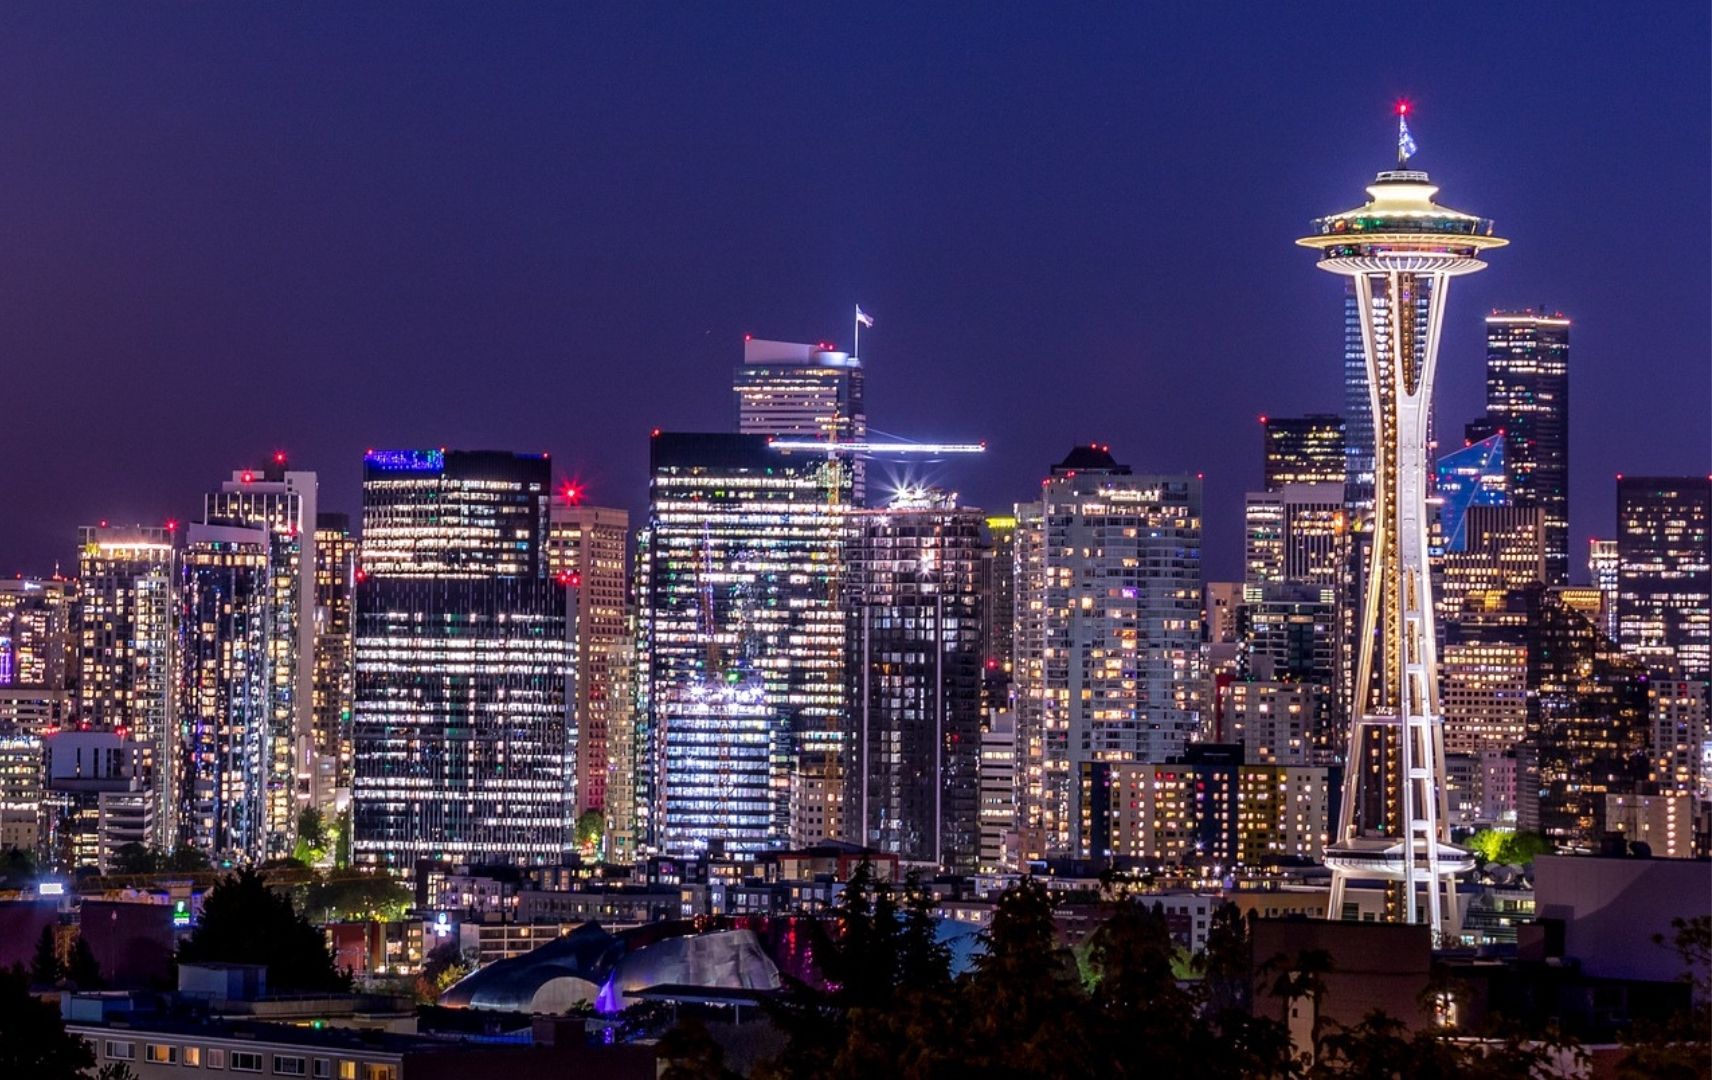 Seattle Space Needle beleuchtet bei Nacht mit Skyline im Hintergrund